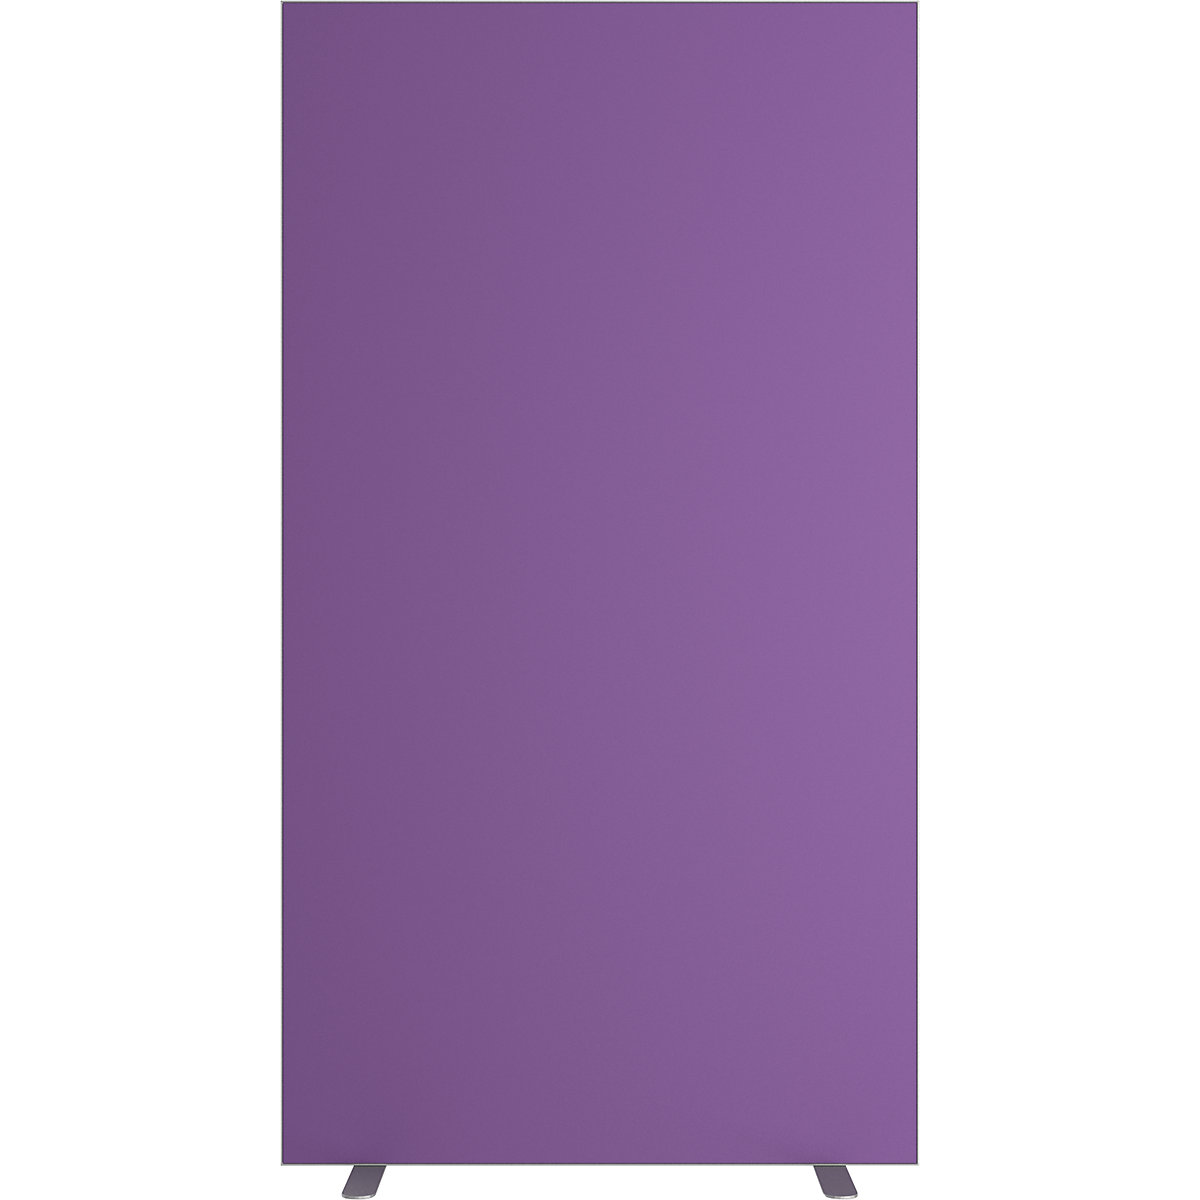 Dělicí stěna easyScreen, jednobarevná, s protihlukovou úpravou, fialová, šířka 940 mm-4